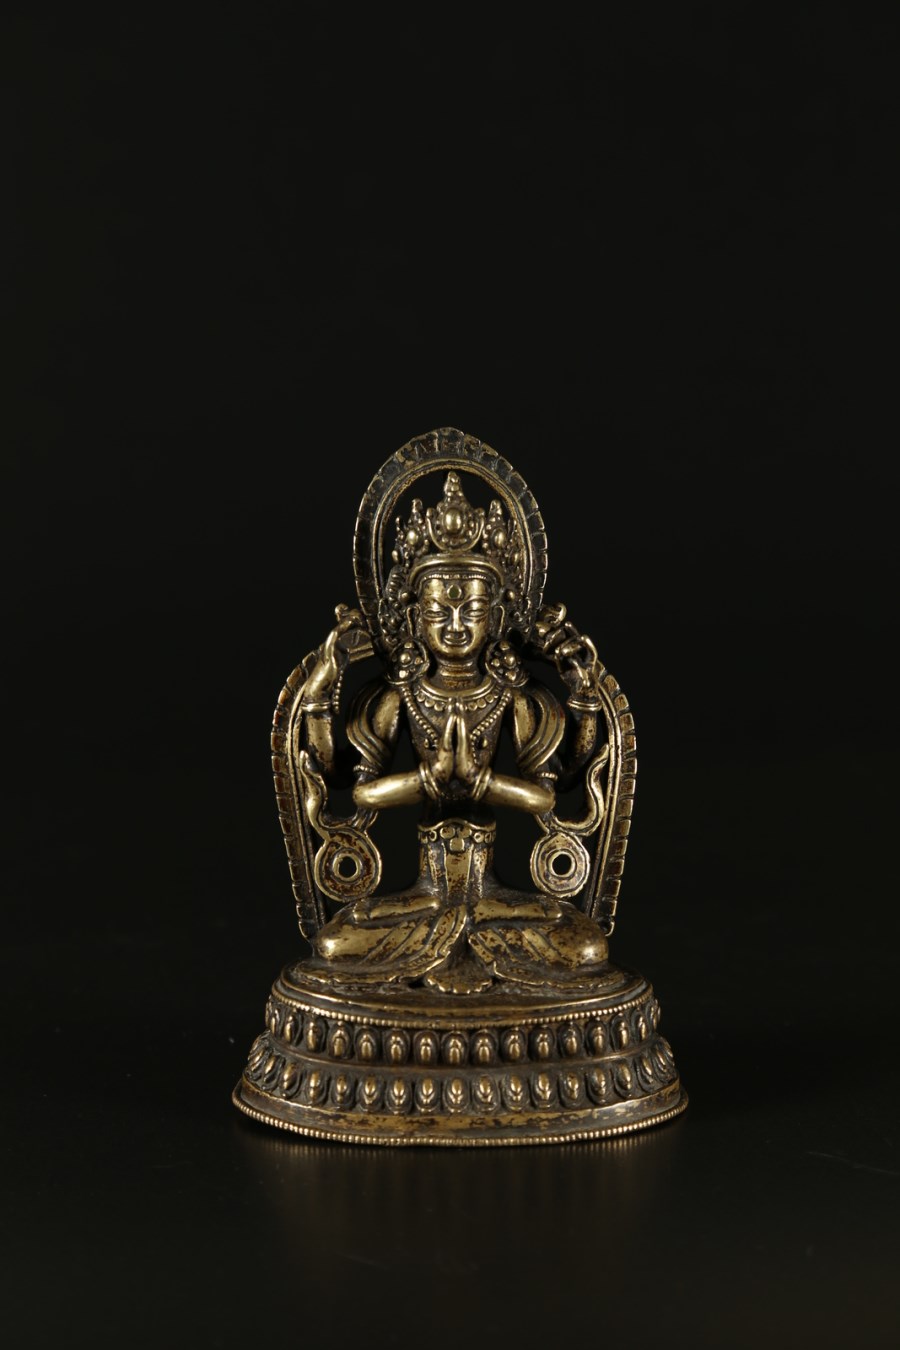 A bronze sculpture portraying Avalokistesvara
Tibet, 17th century (Arte Himalayana )